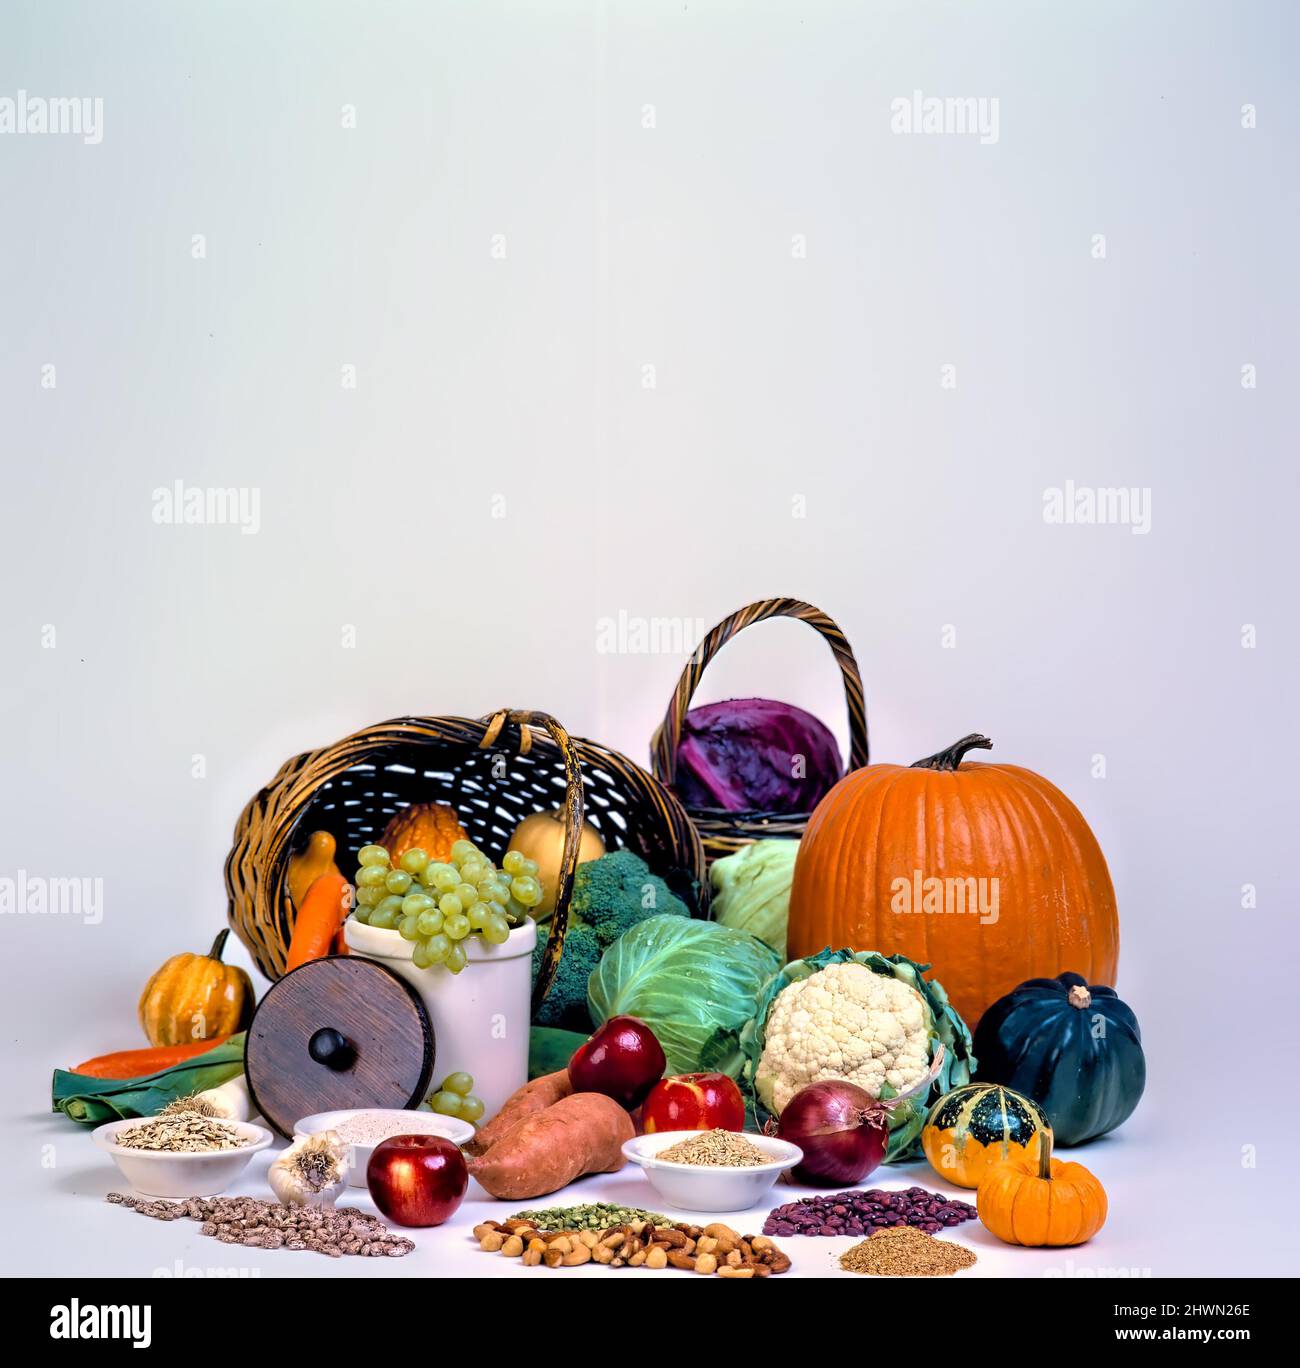 Cesti di frutta, verdura, grani, e noci disposti in una cascata di colore evidenzia zucche, cavolo, cavolfiore, broccoli, uva, c Foto Stock